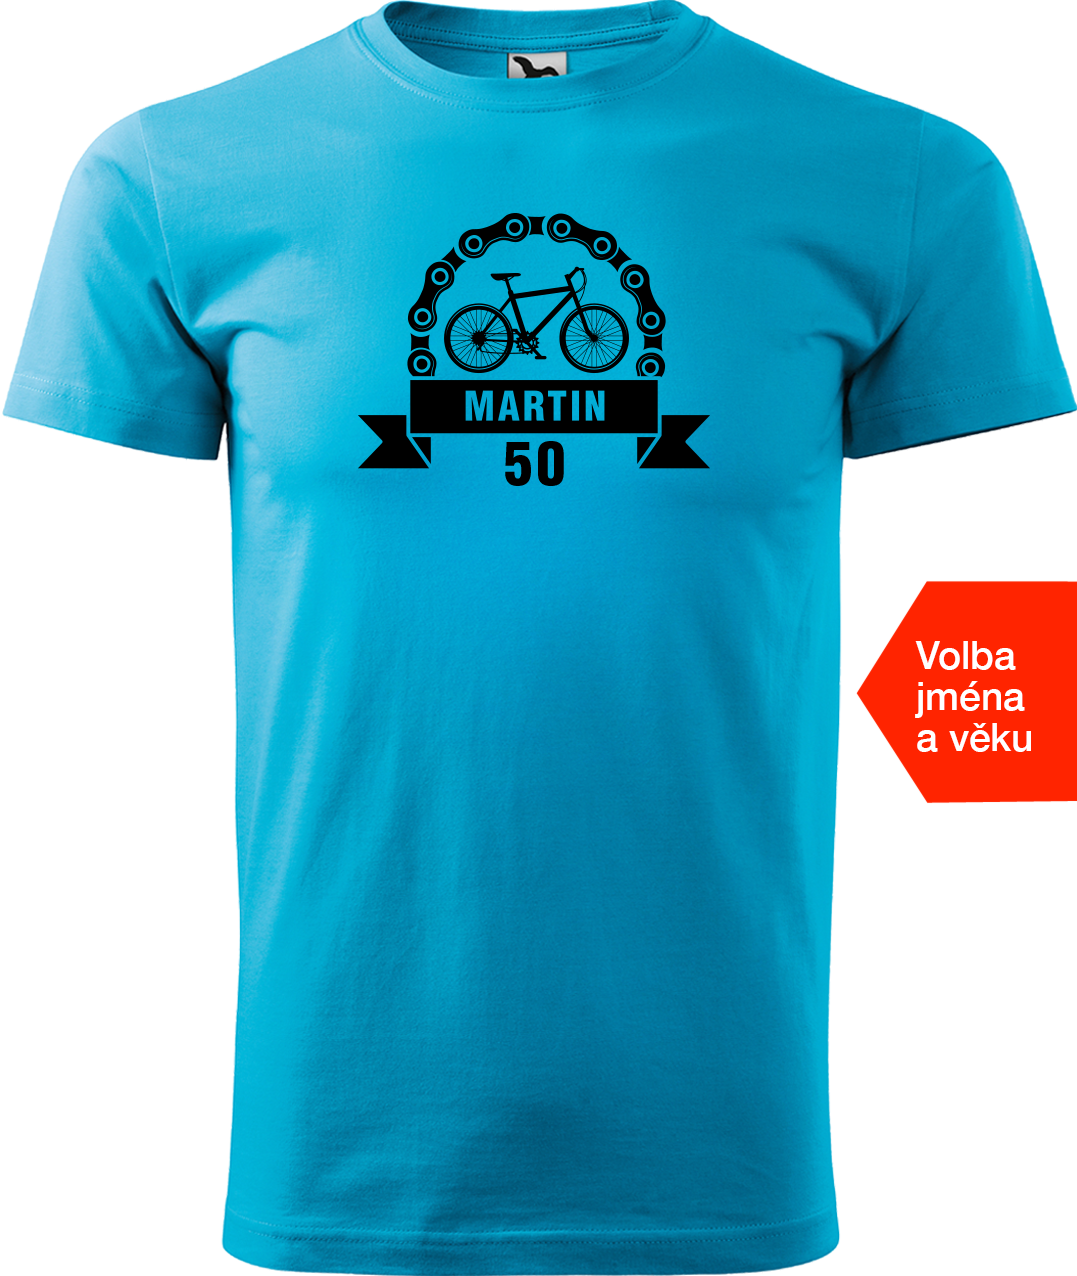 Pánské tričko pro cyklistu se jménem a věkem - Blahopřání Velikost: 2XL, Barva: Tyrkysová (44)